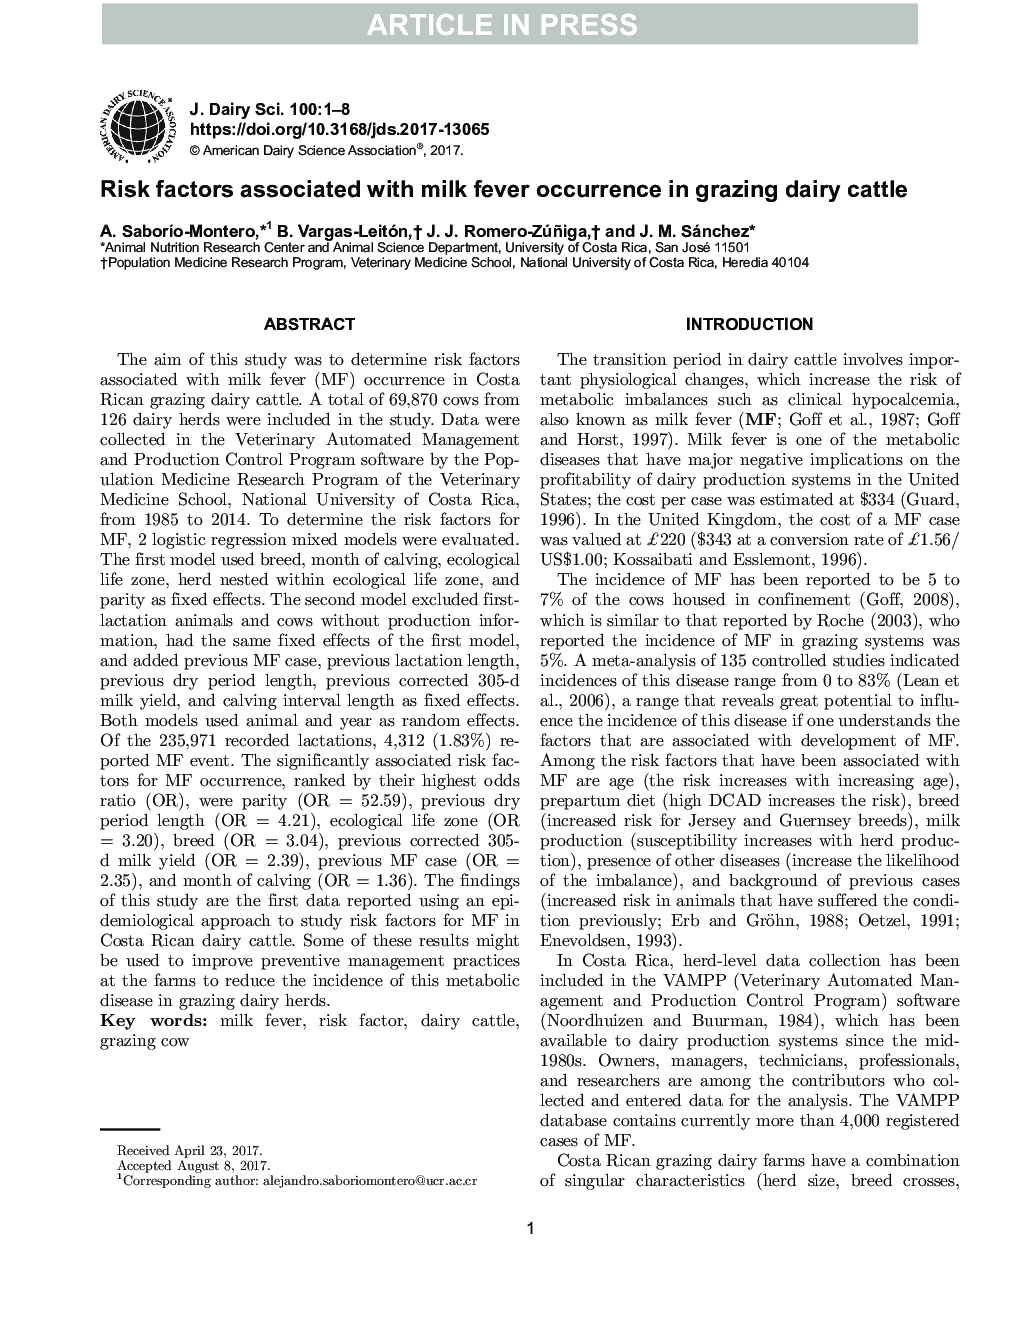 عوامل خطر مرتبط با تب بروز شیر در گاوهای شیری گاو 